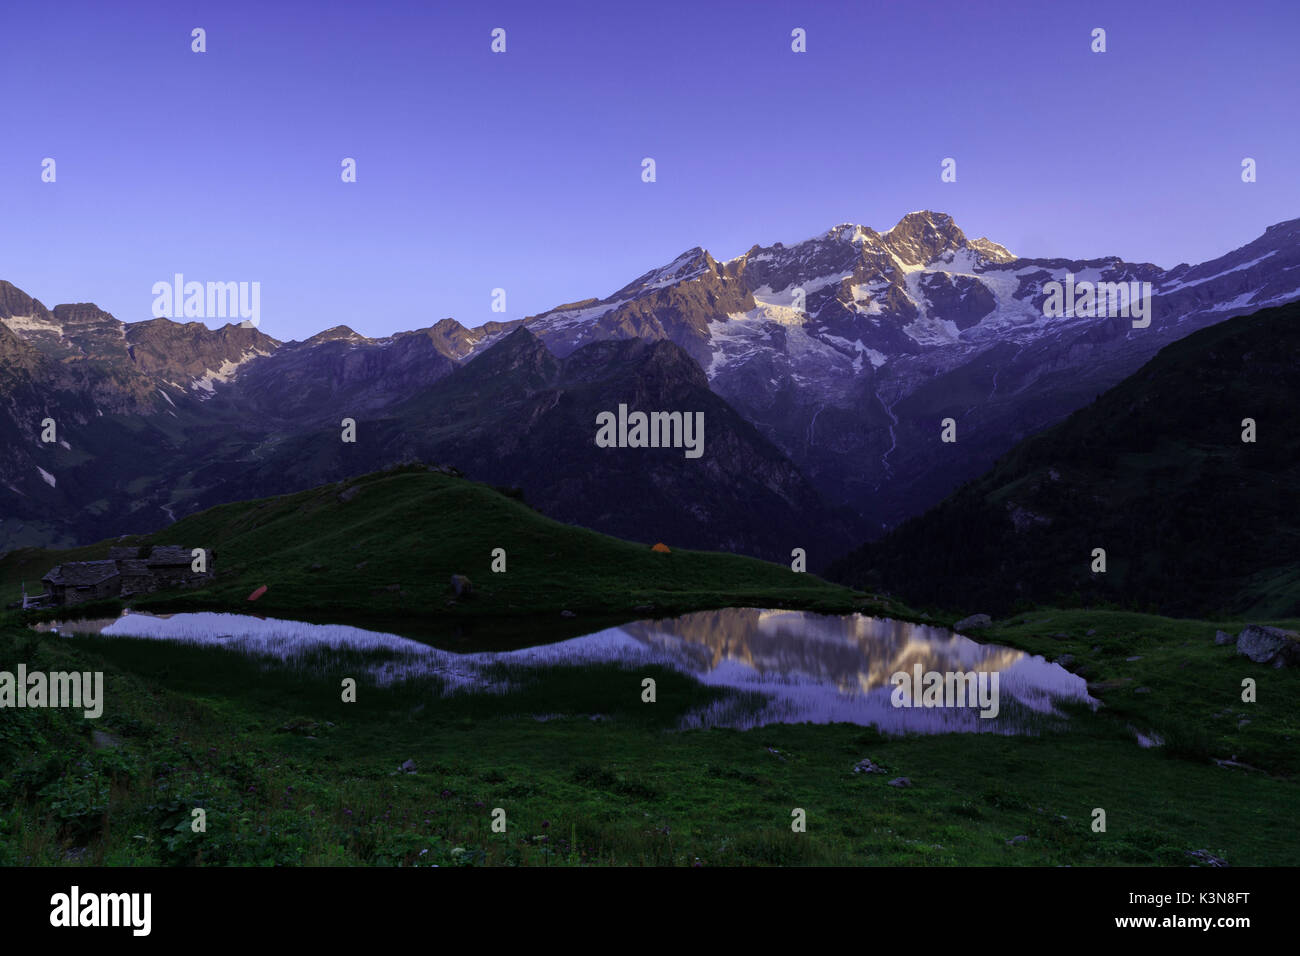 Alpe Campo mit Monte Rosa spiegelt sich auf dem See, Alagna Valsesia, Val d'Aosta, Italien Stockfoto